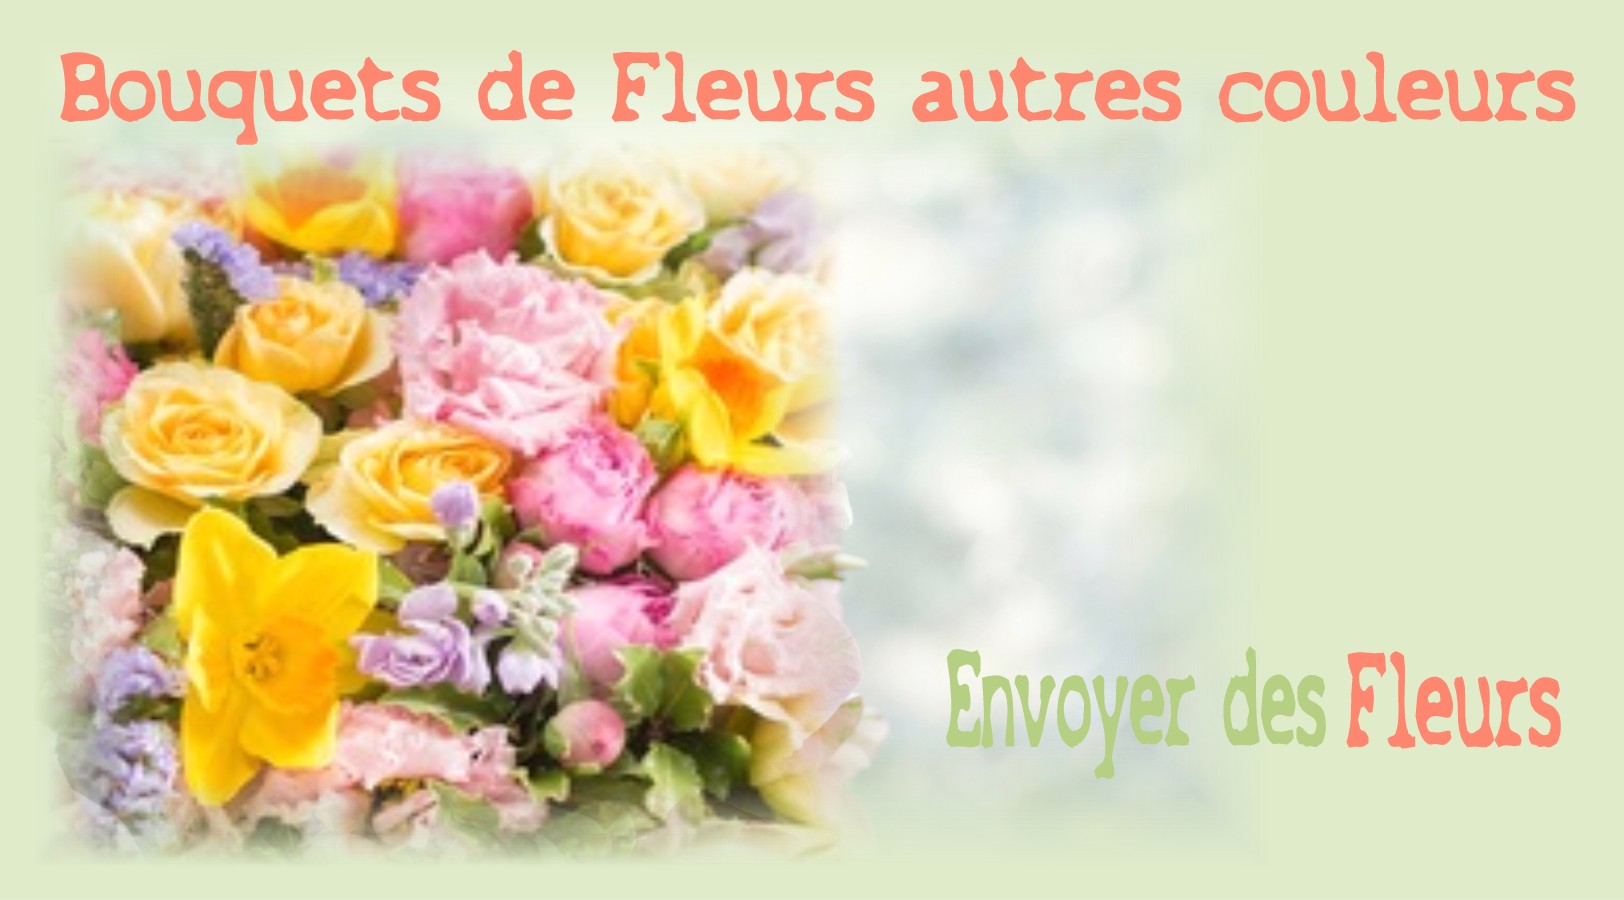 BOUQUETS DE FLEURS AUTRES COULEURS - FLEURISTE TOULOUSE (31) - ENVOYER DES FLEURS